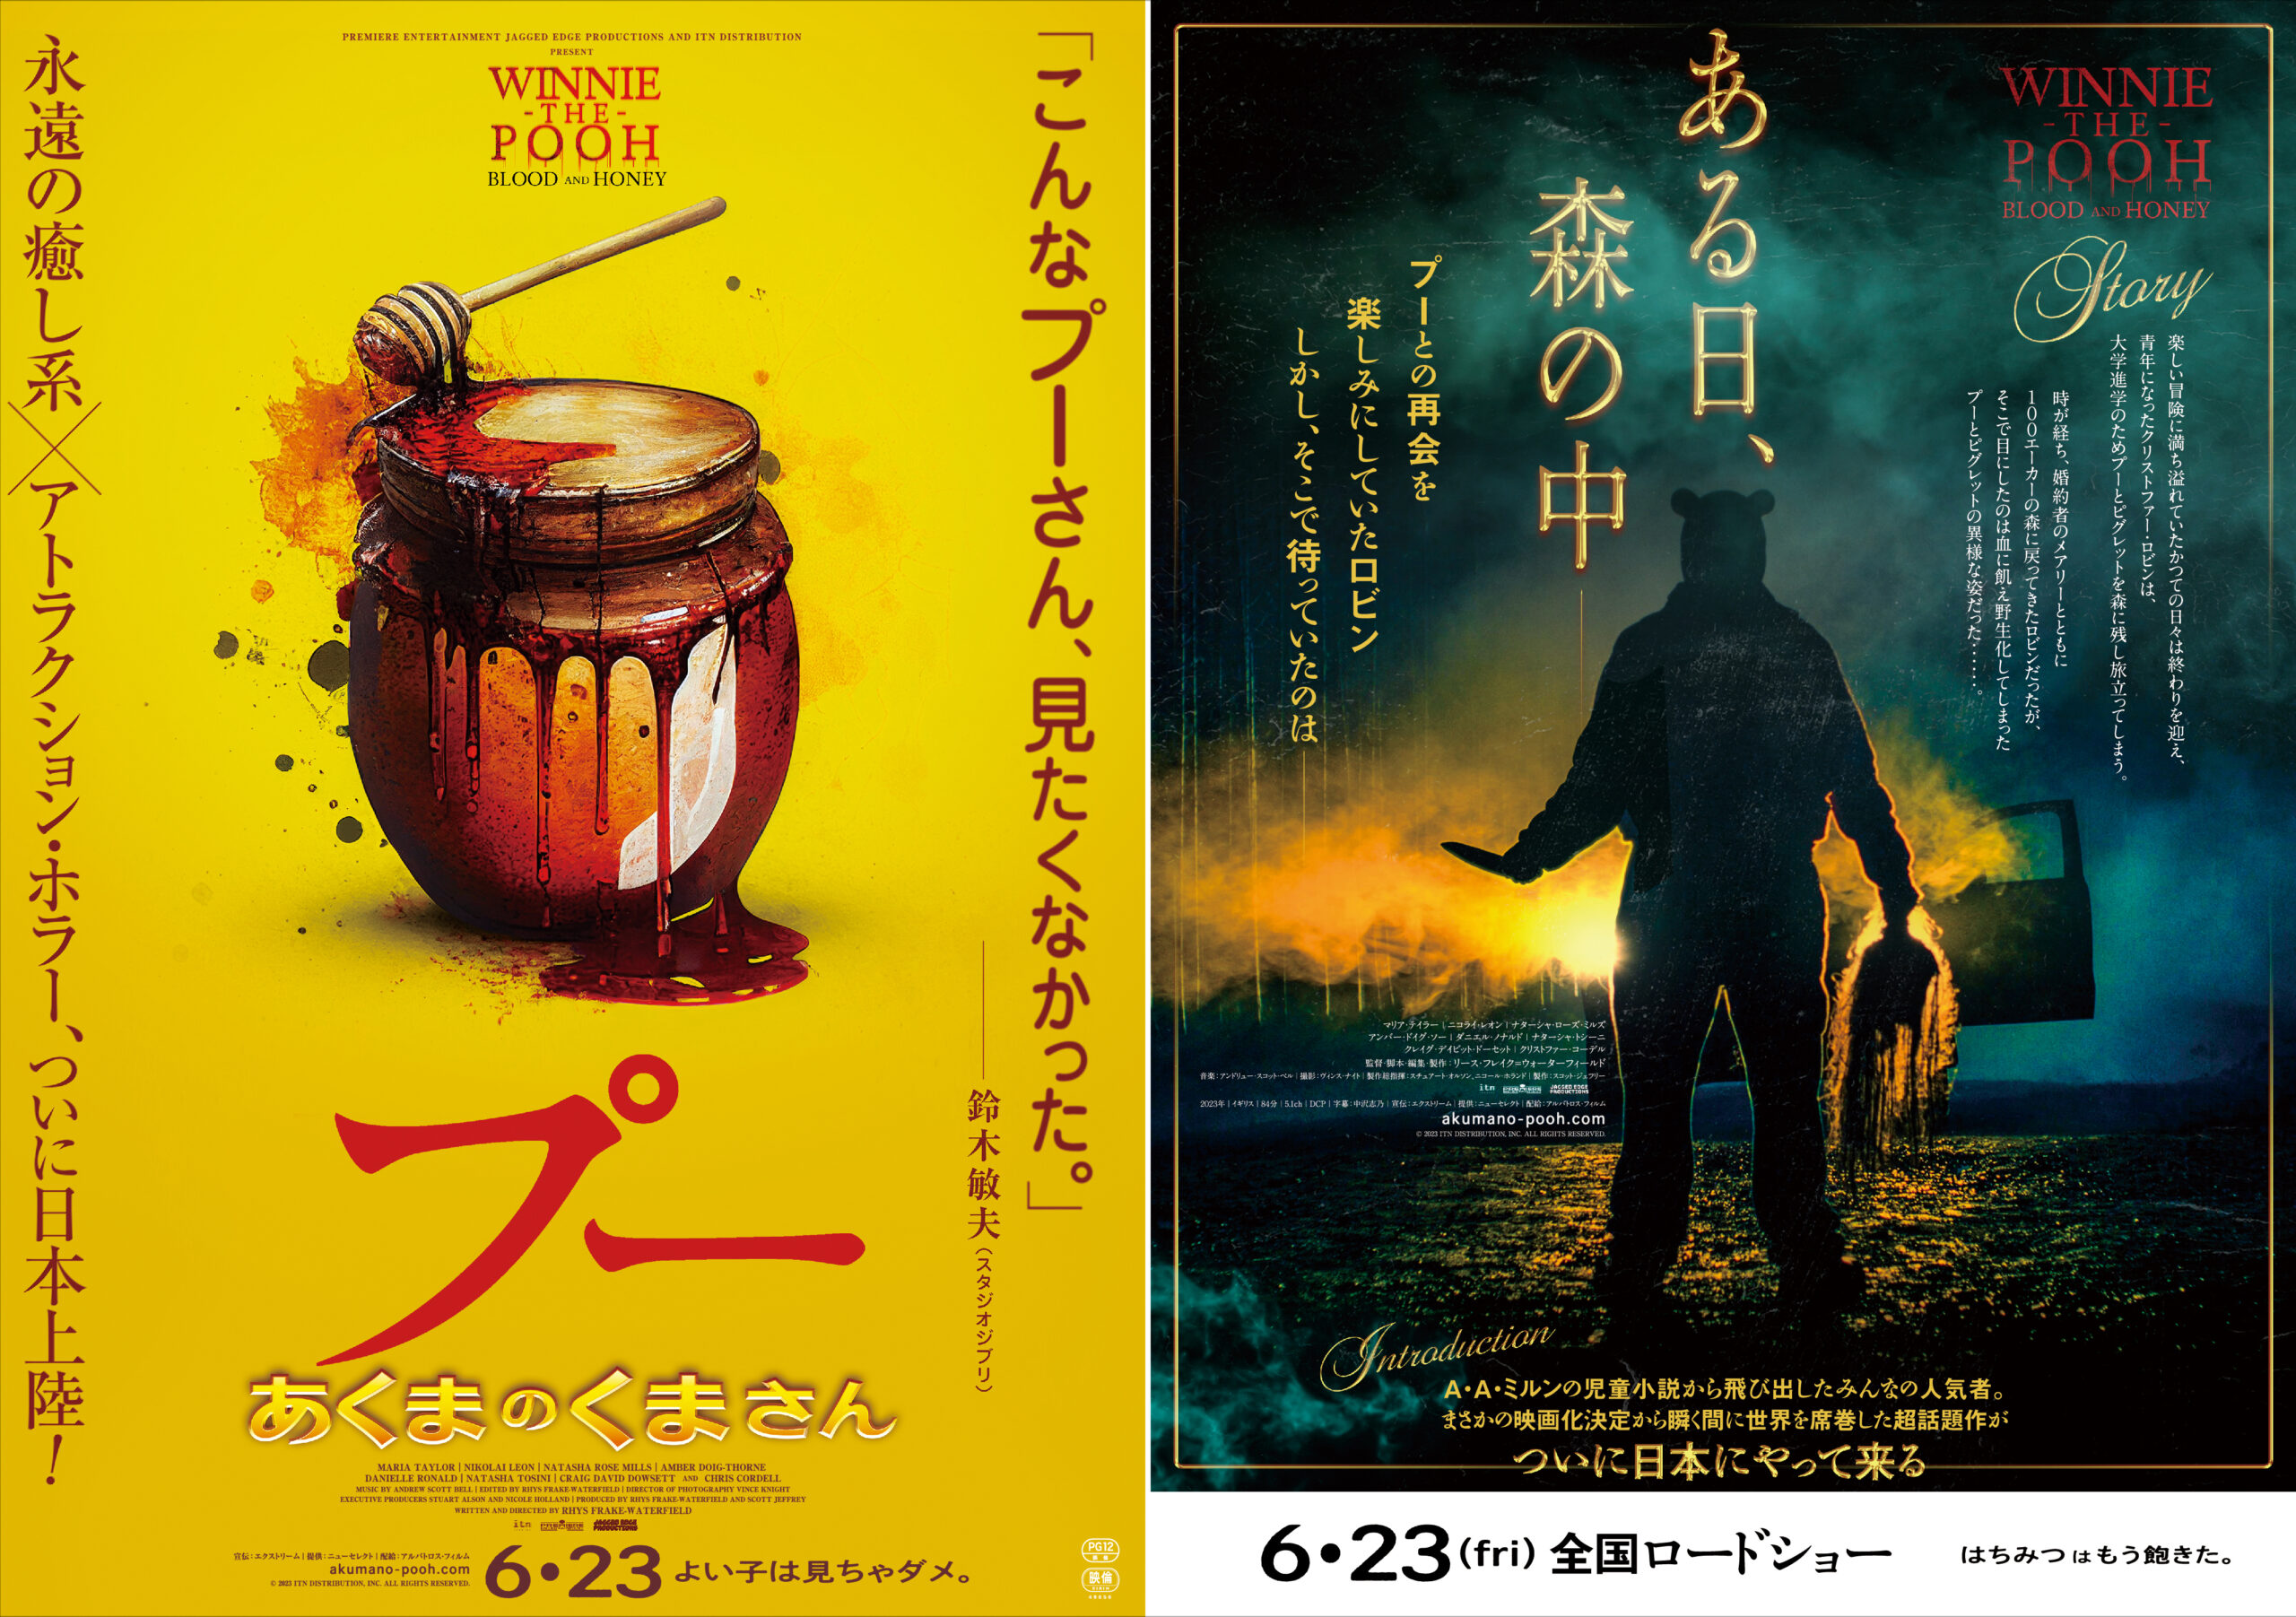 第34回東京国際映画祭オープニング作品にイーストウッド最新作『クライ・マッチョ』が決定！ クロージングは『ディア・エヴァン・ハンセン』に